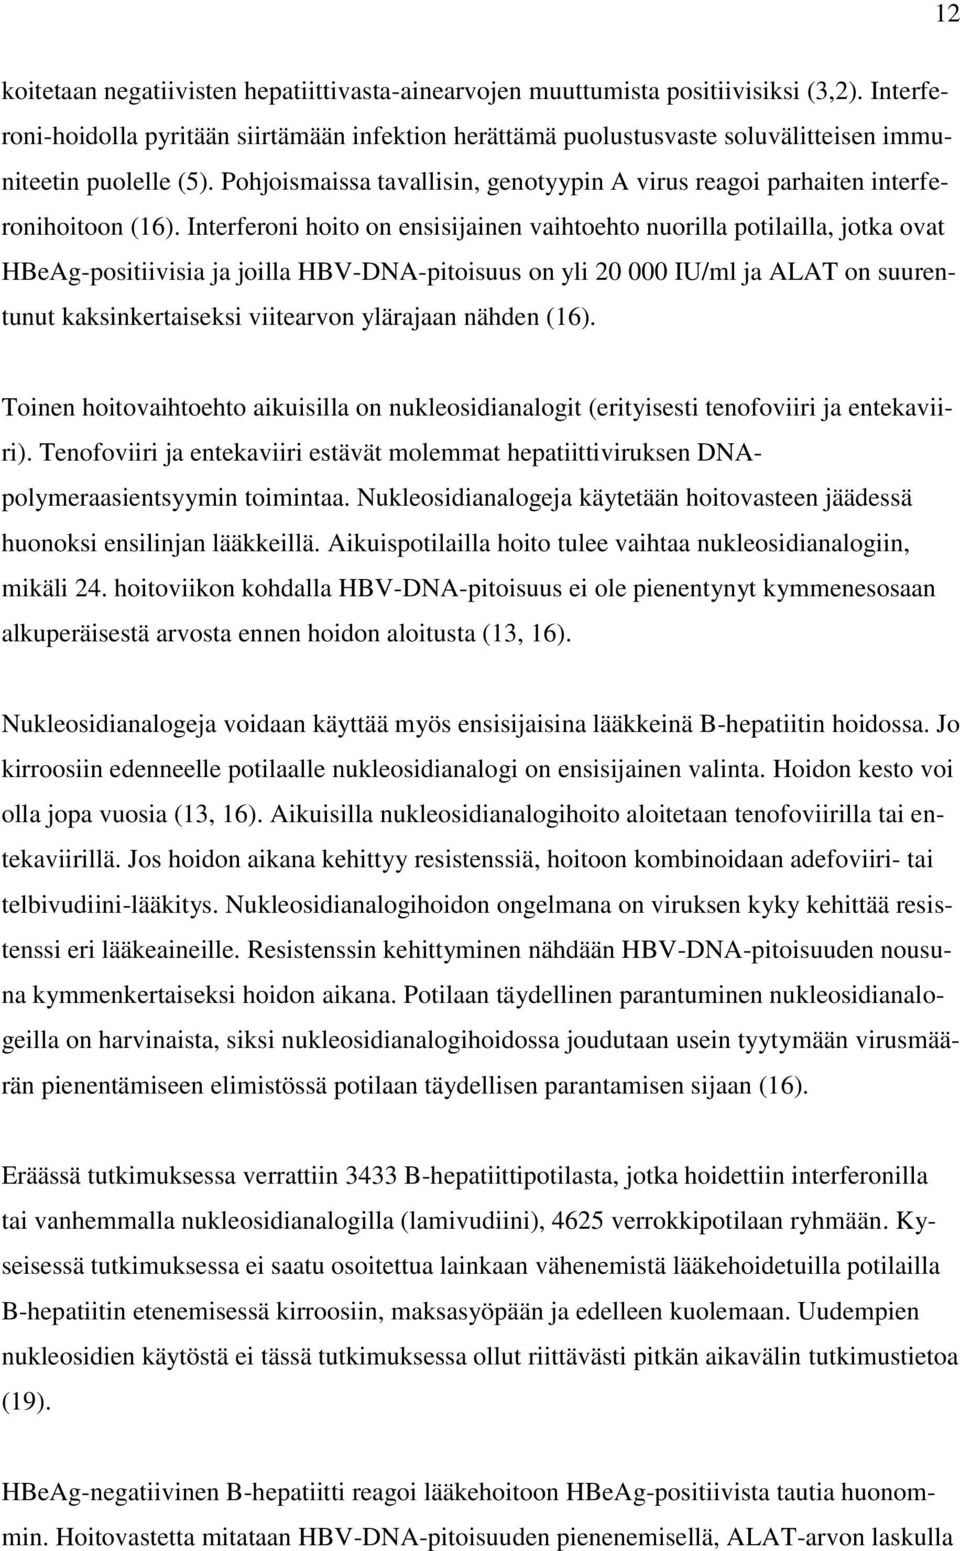 Pohjoismaissa tavallisin, genotyypin A virus reagoi parhaiten interferonihoitoon (16).